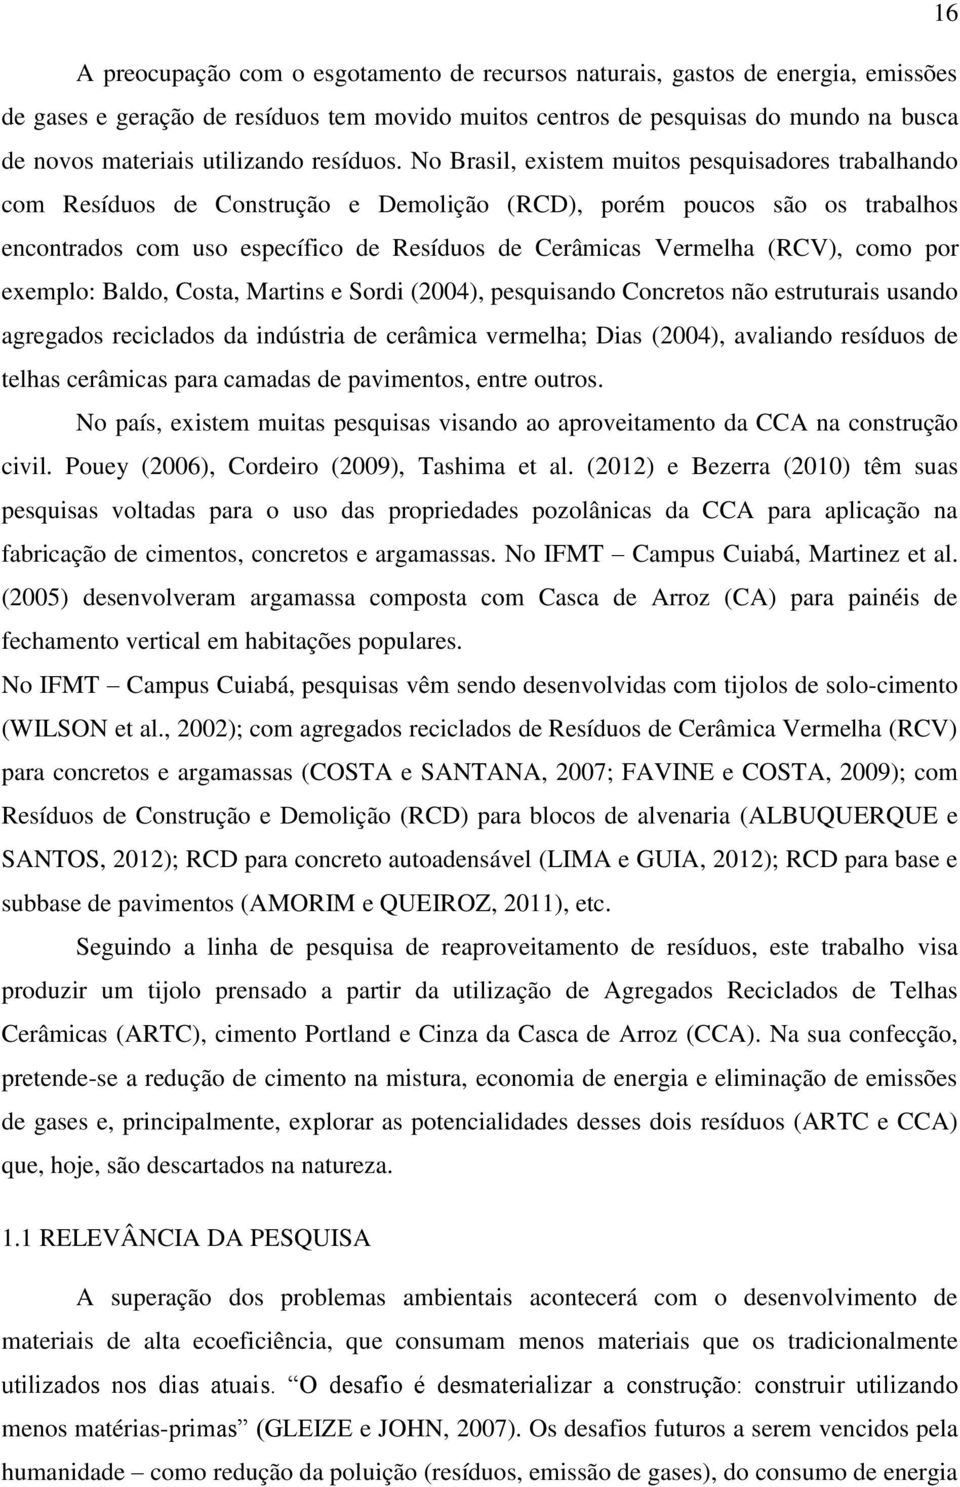 No Brasil, existem muitos pesquisadores trabalhando com Resíduos de Construção e Demolição (RCD), porém poucos são os trabalhos encontrados com uso específico de Resíduos de Cerâmicas Vermelha (RCV),